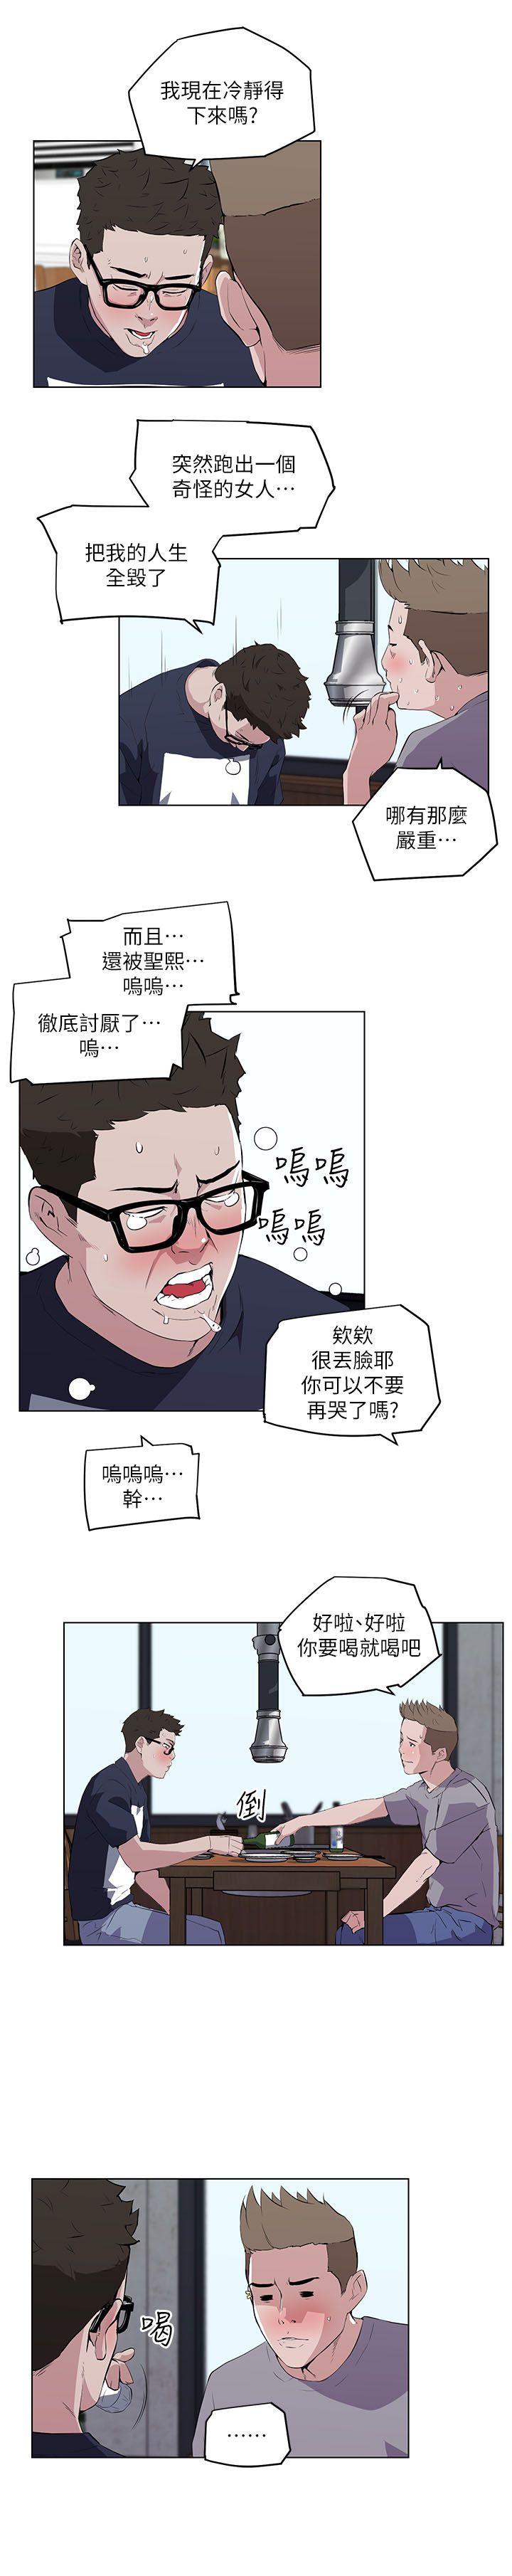 韩国污漫画 打開她的苞 第8话 4